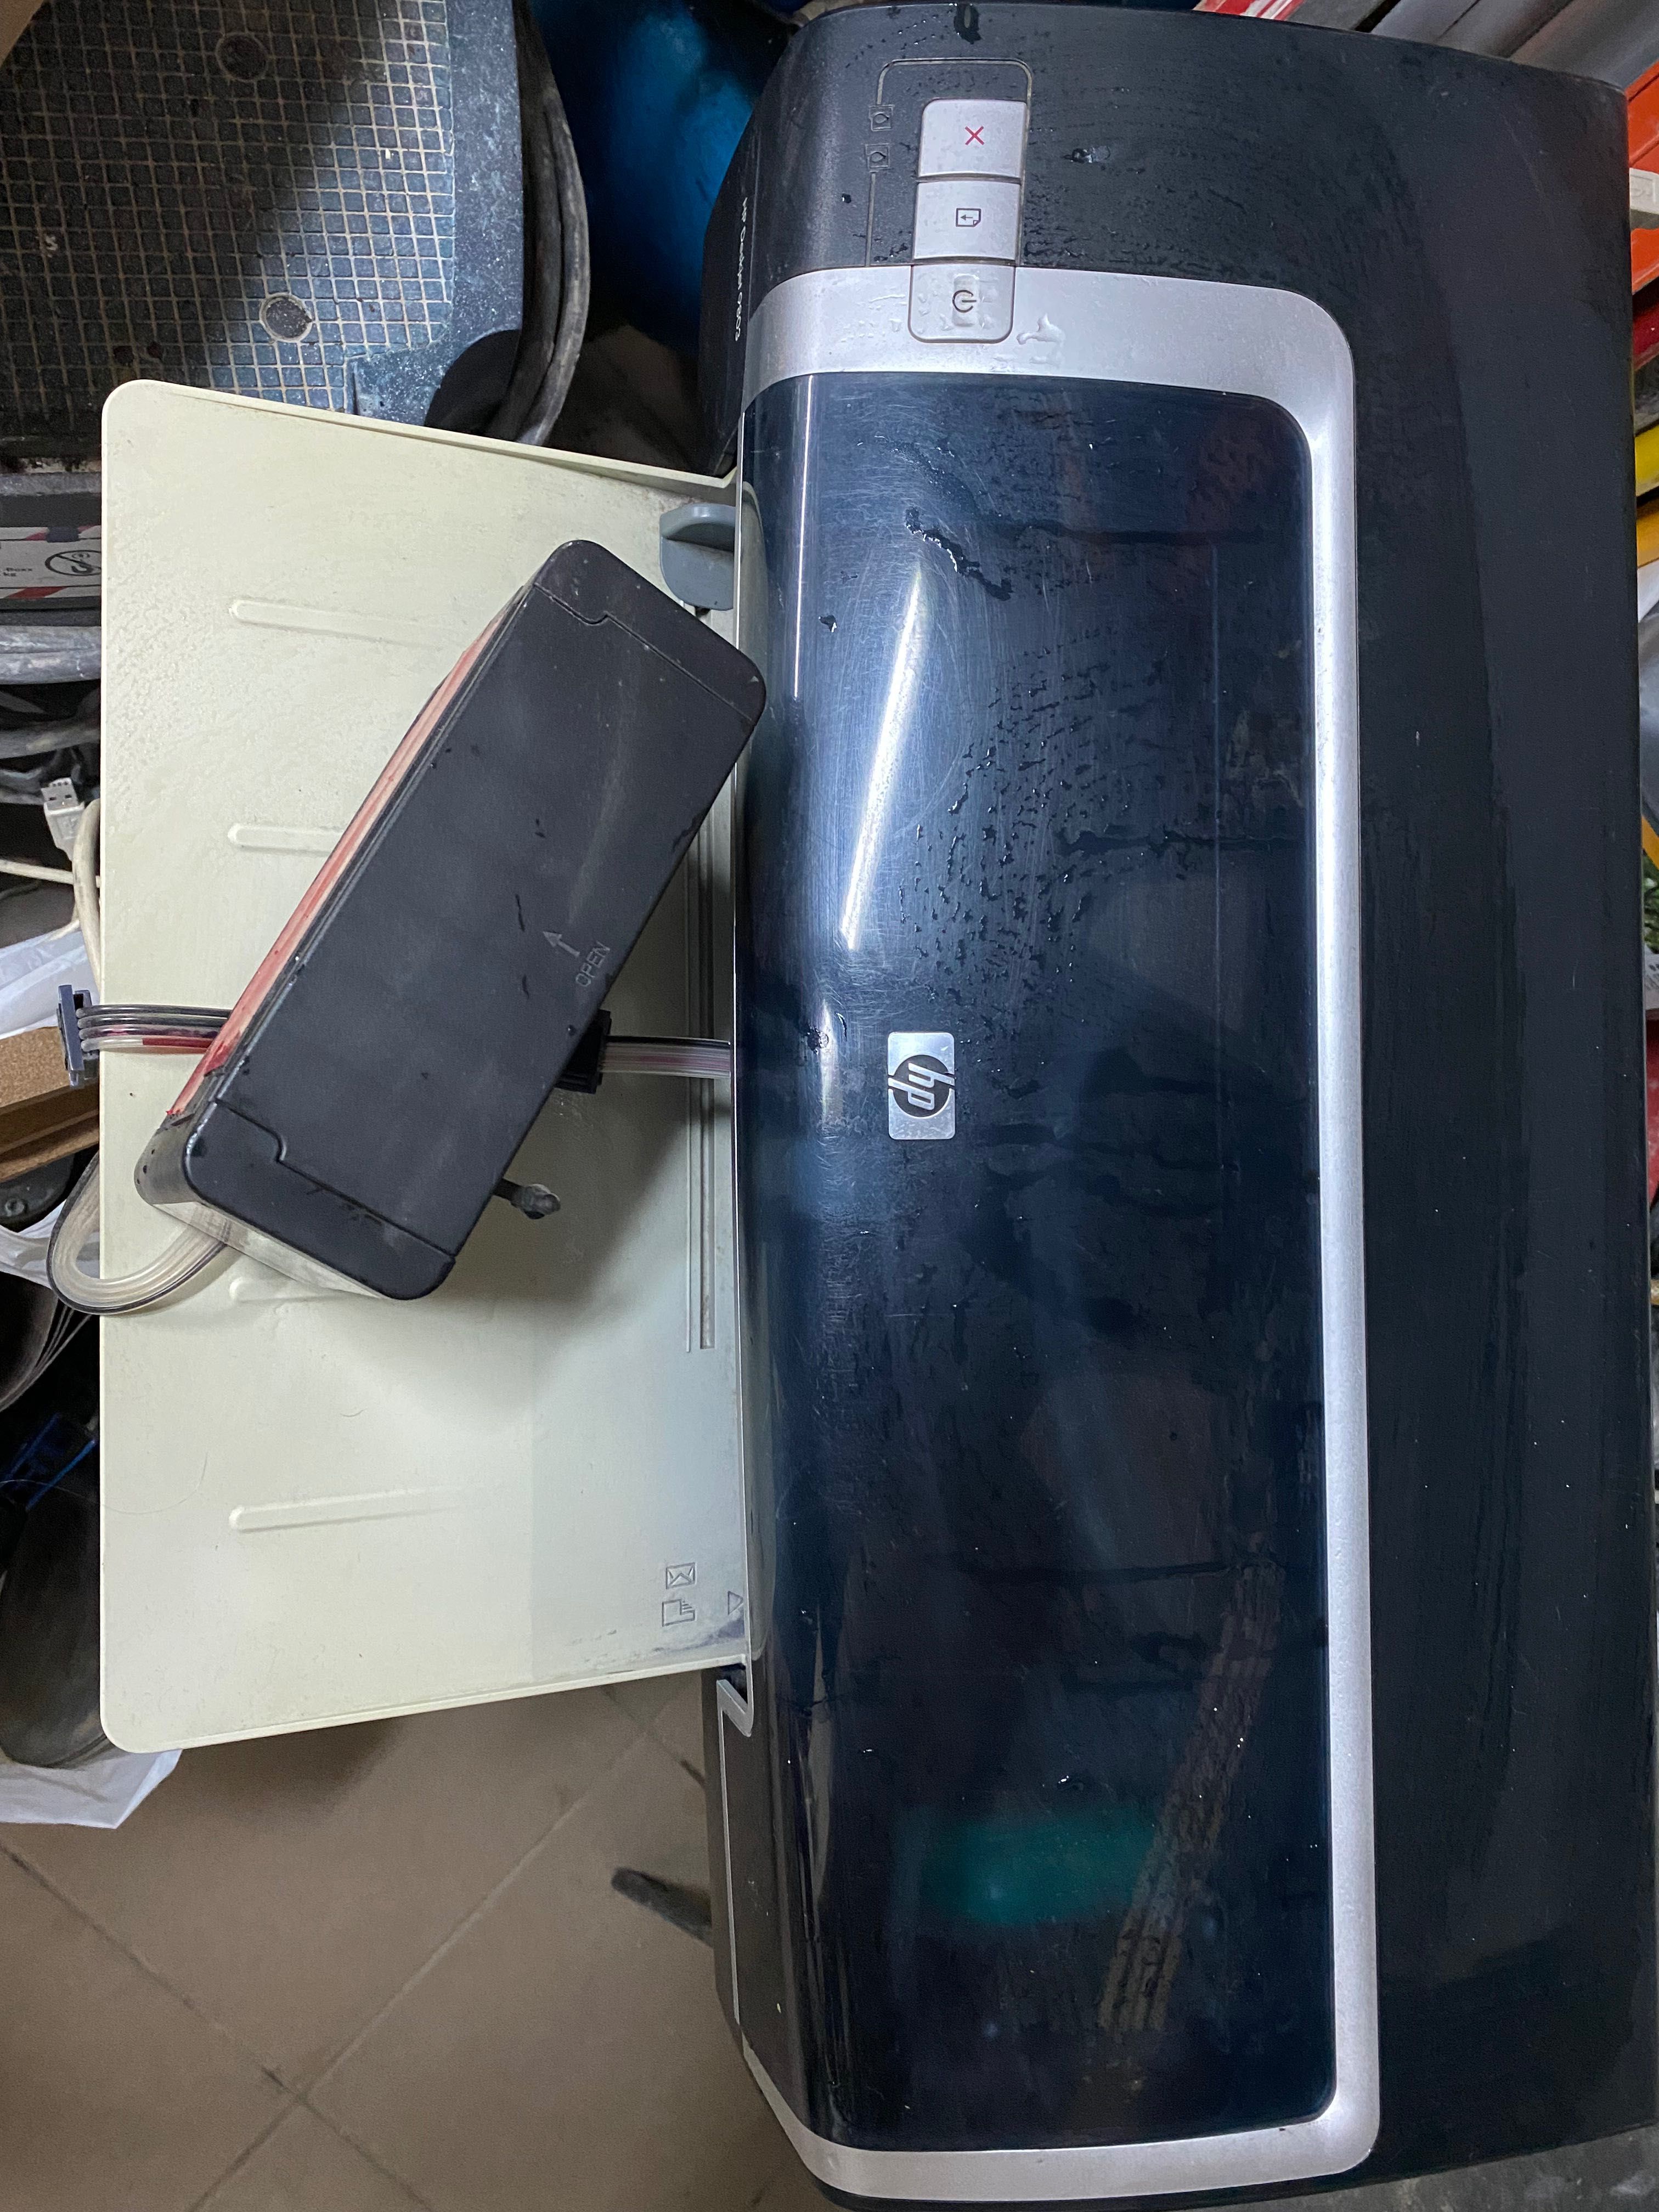 Принтер HP DeskJet 9800d бу с СМПЧ